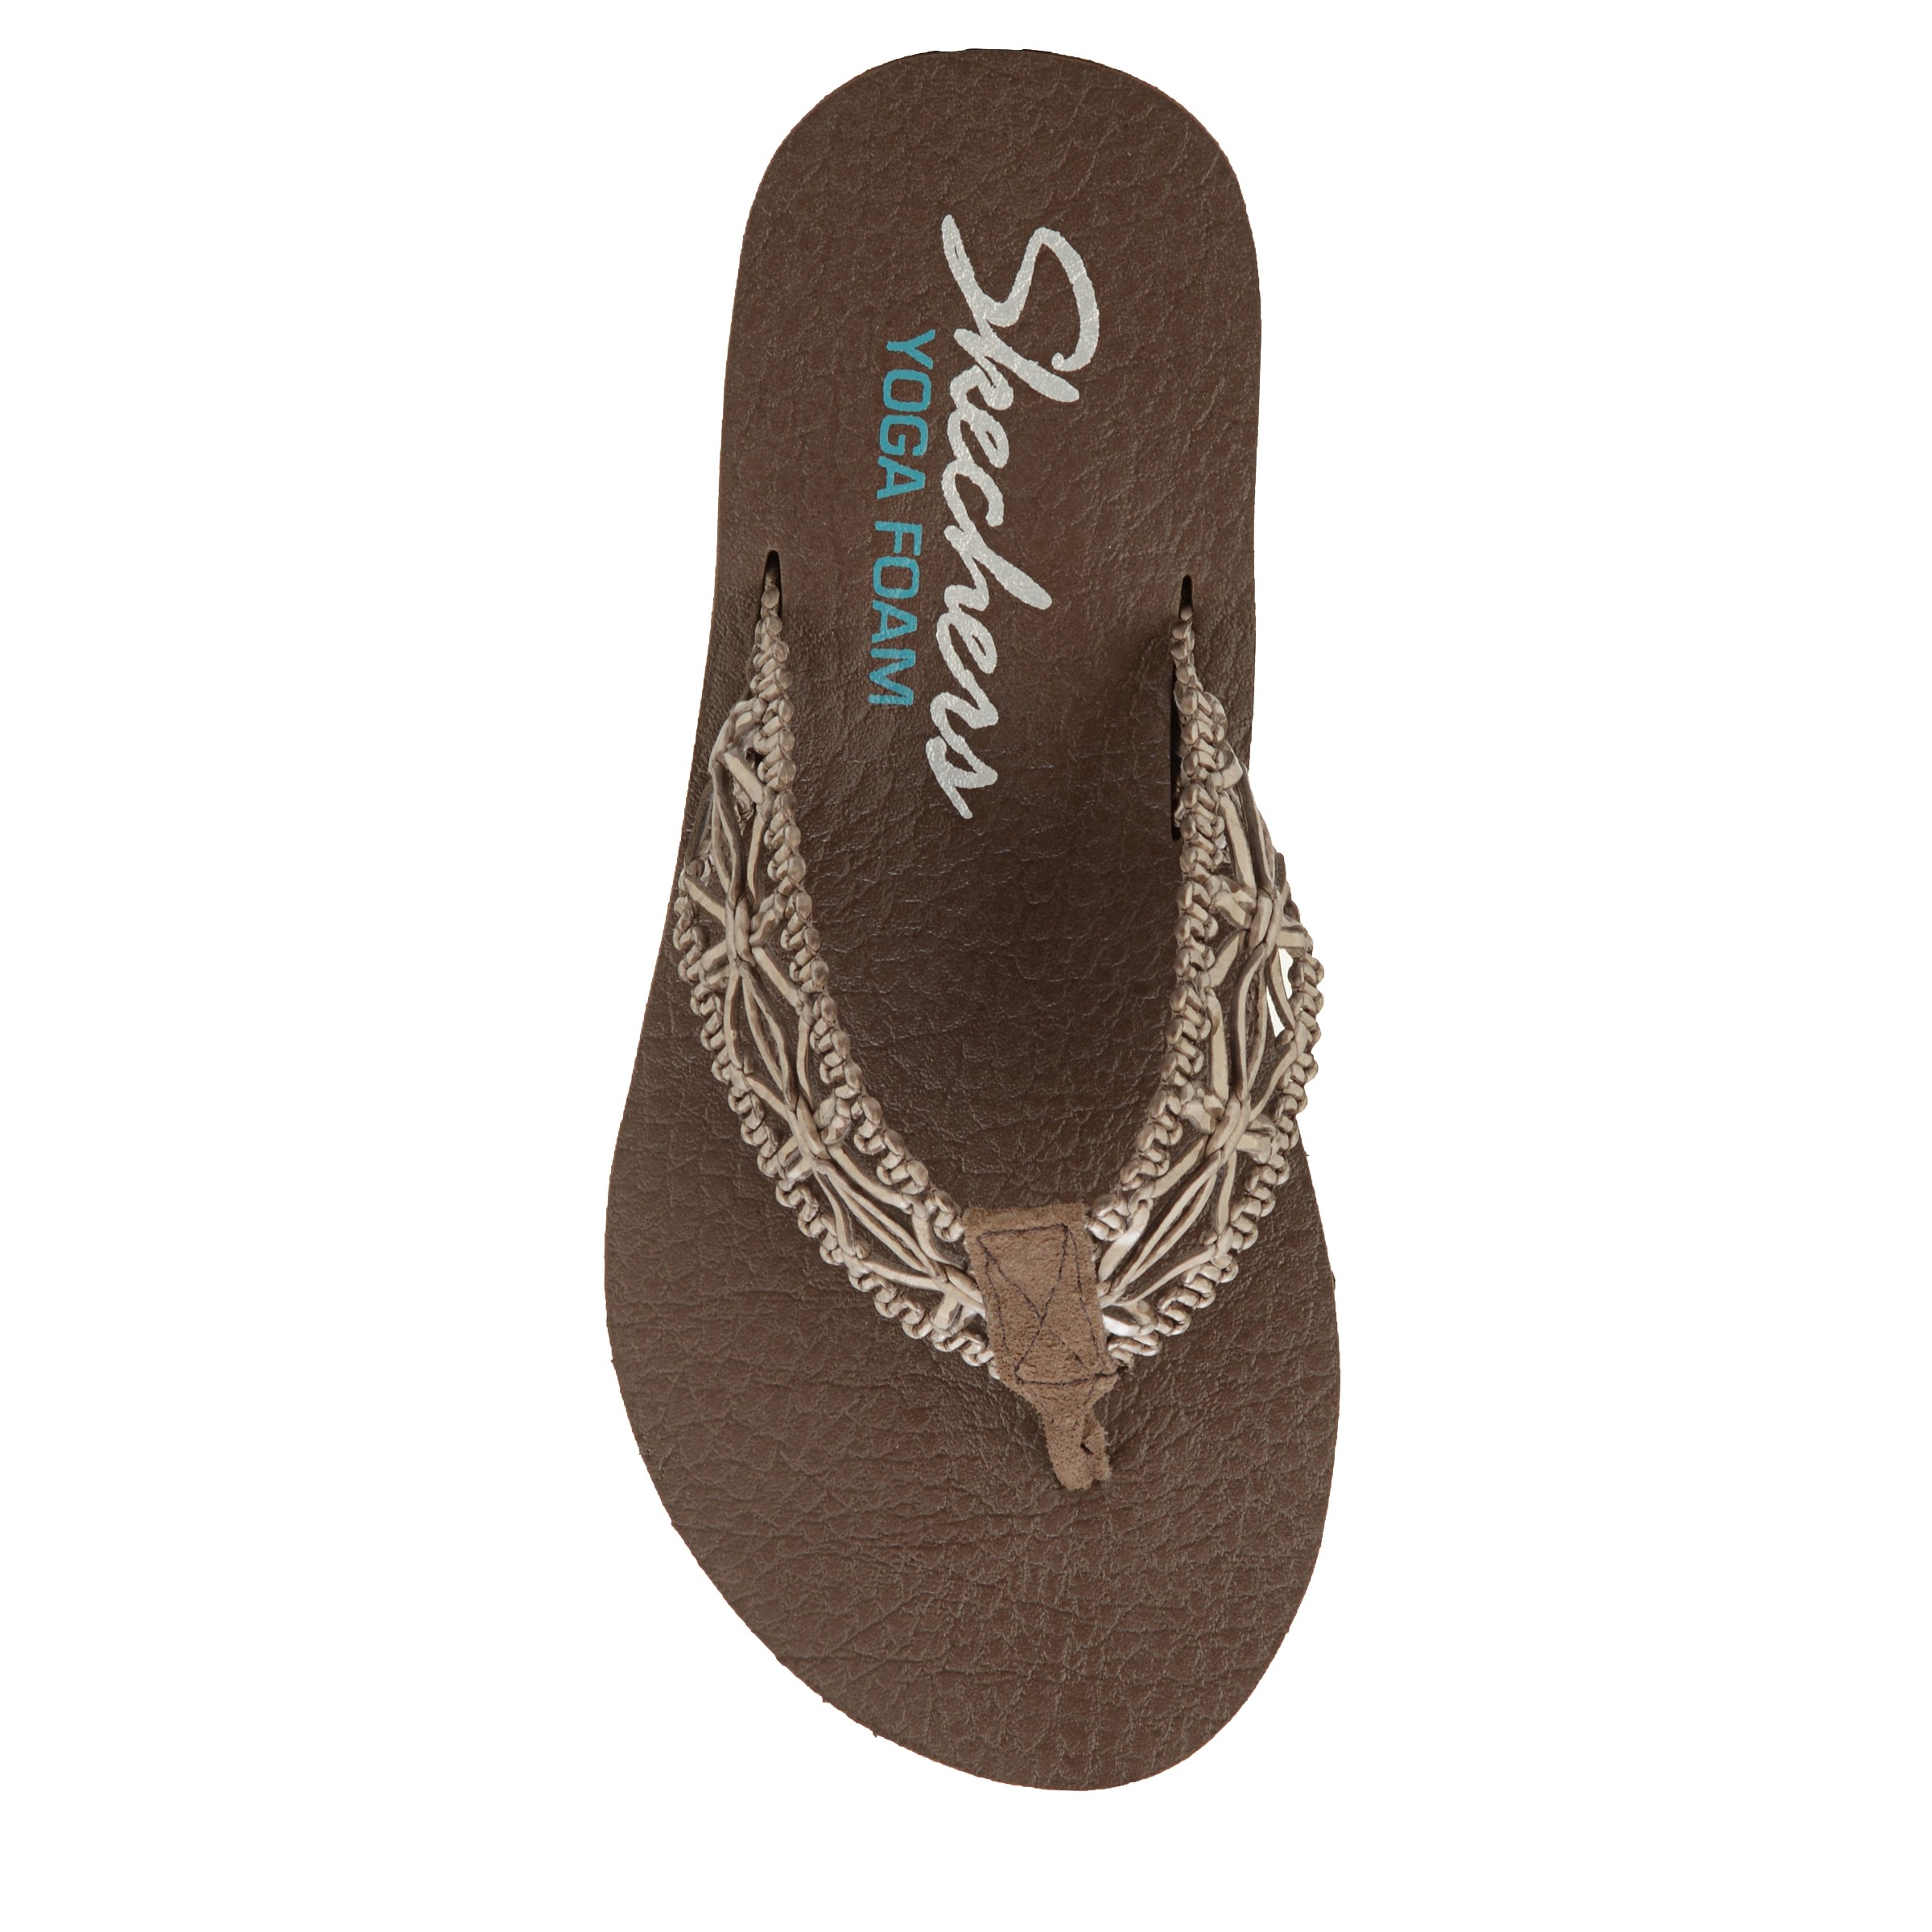 Skechers yoga foam sandals size 9